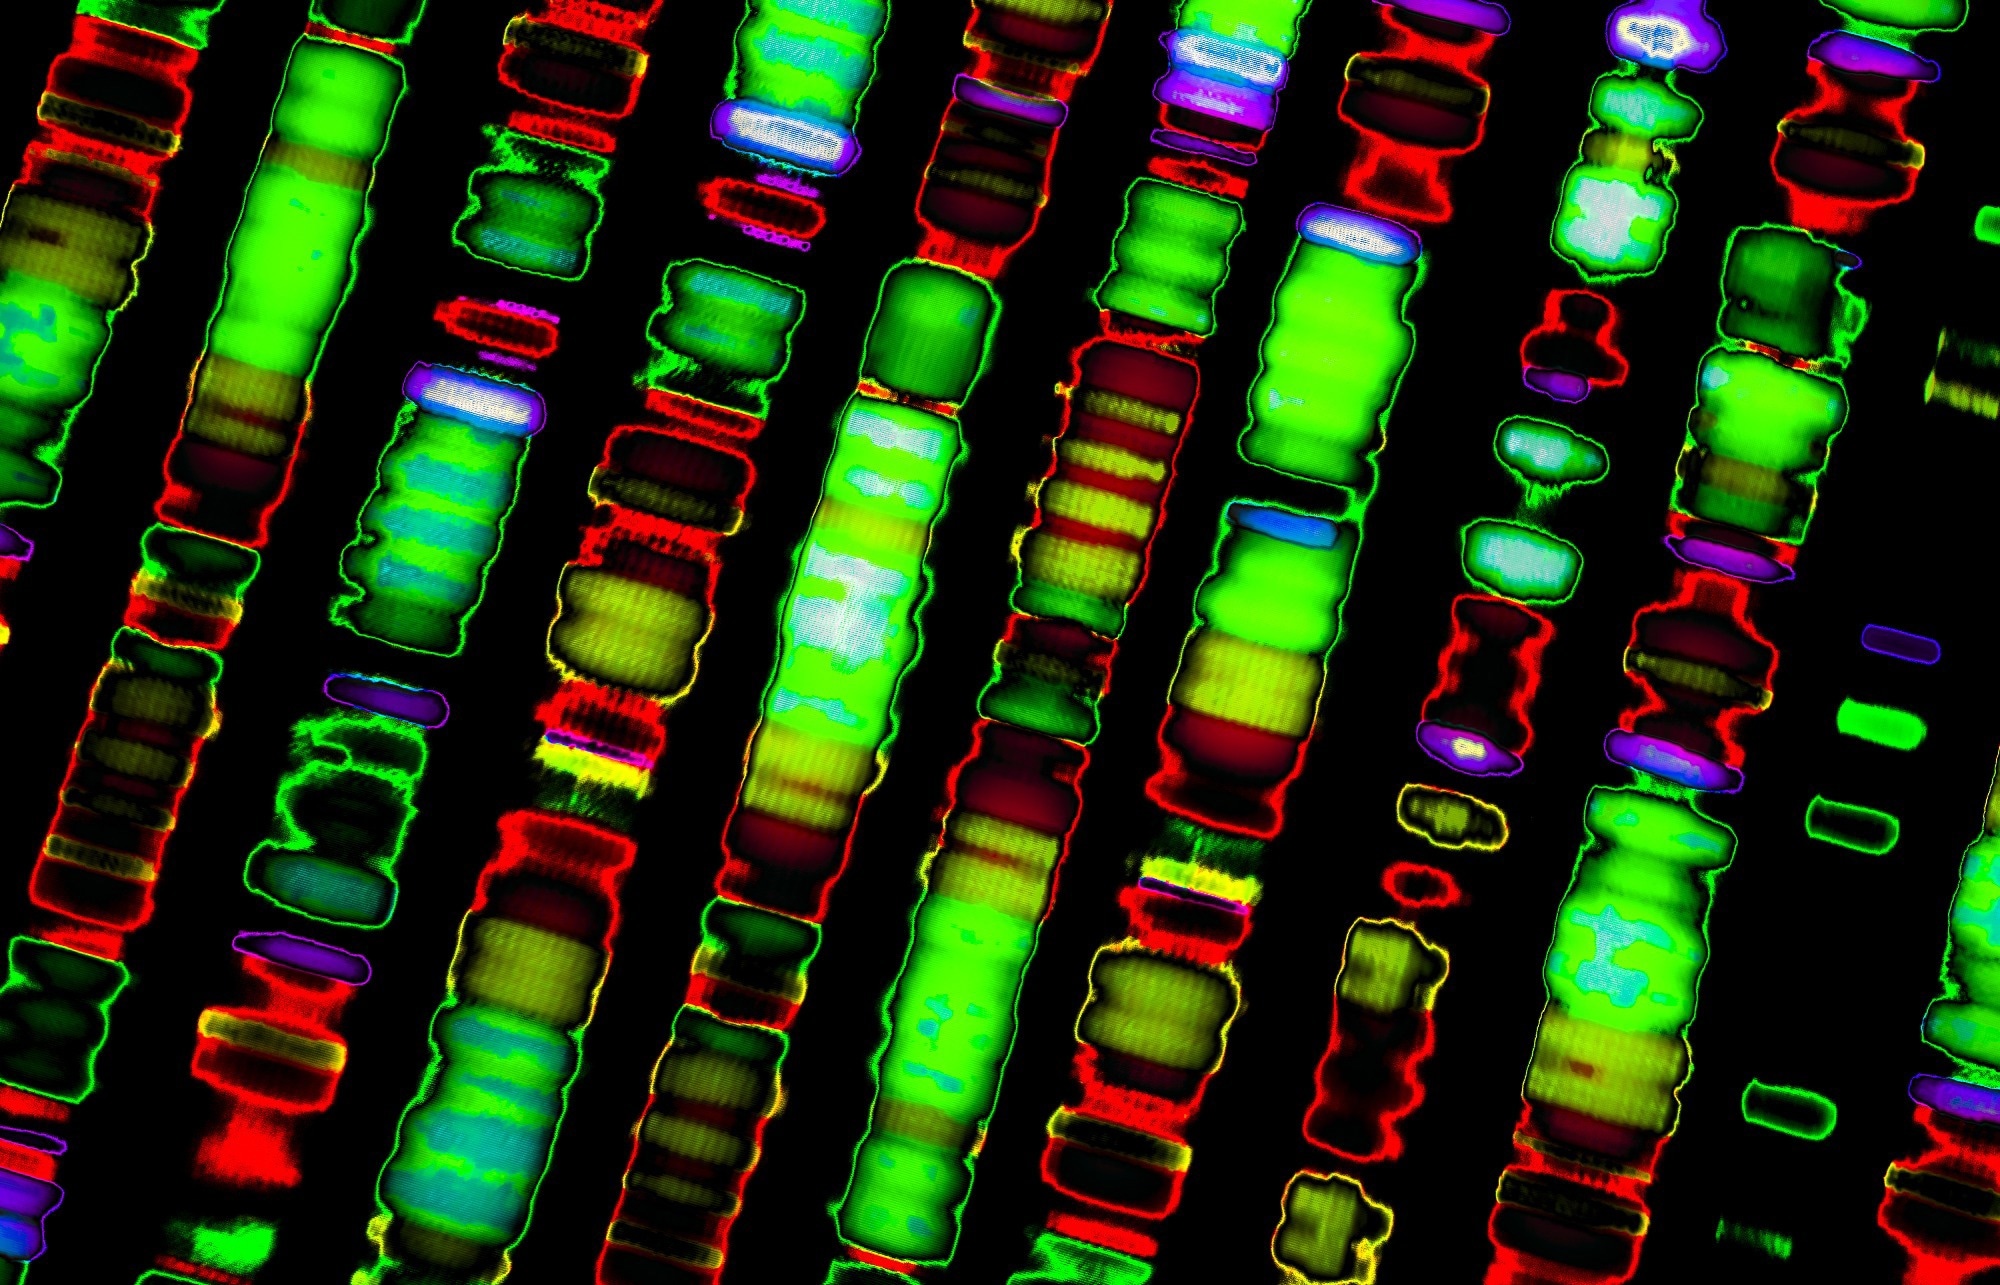 Badanie: Genomowa mapa ograniczeń mutacyjnych wykorzystująca zmienność 76 156 ludzkich genomów.  Źródło obrazu: Gio.tto / Shutterstock